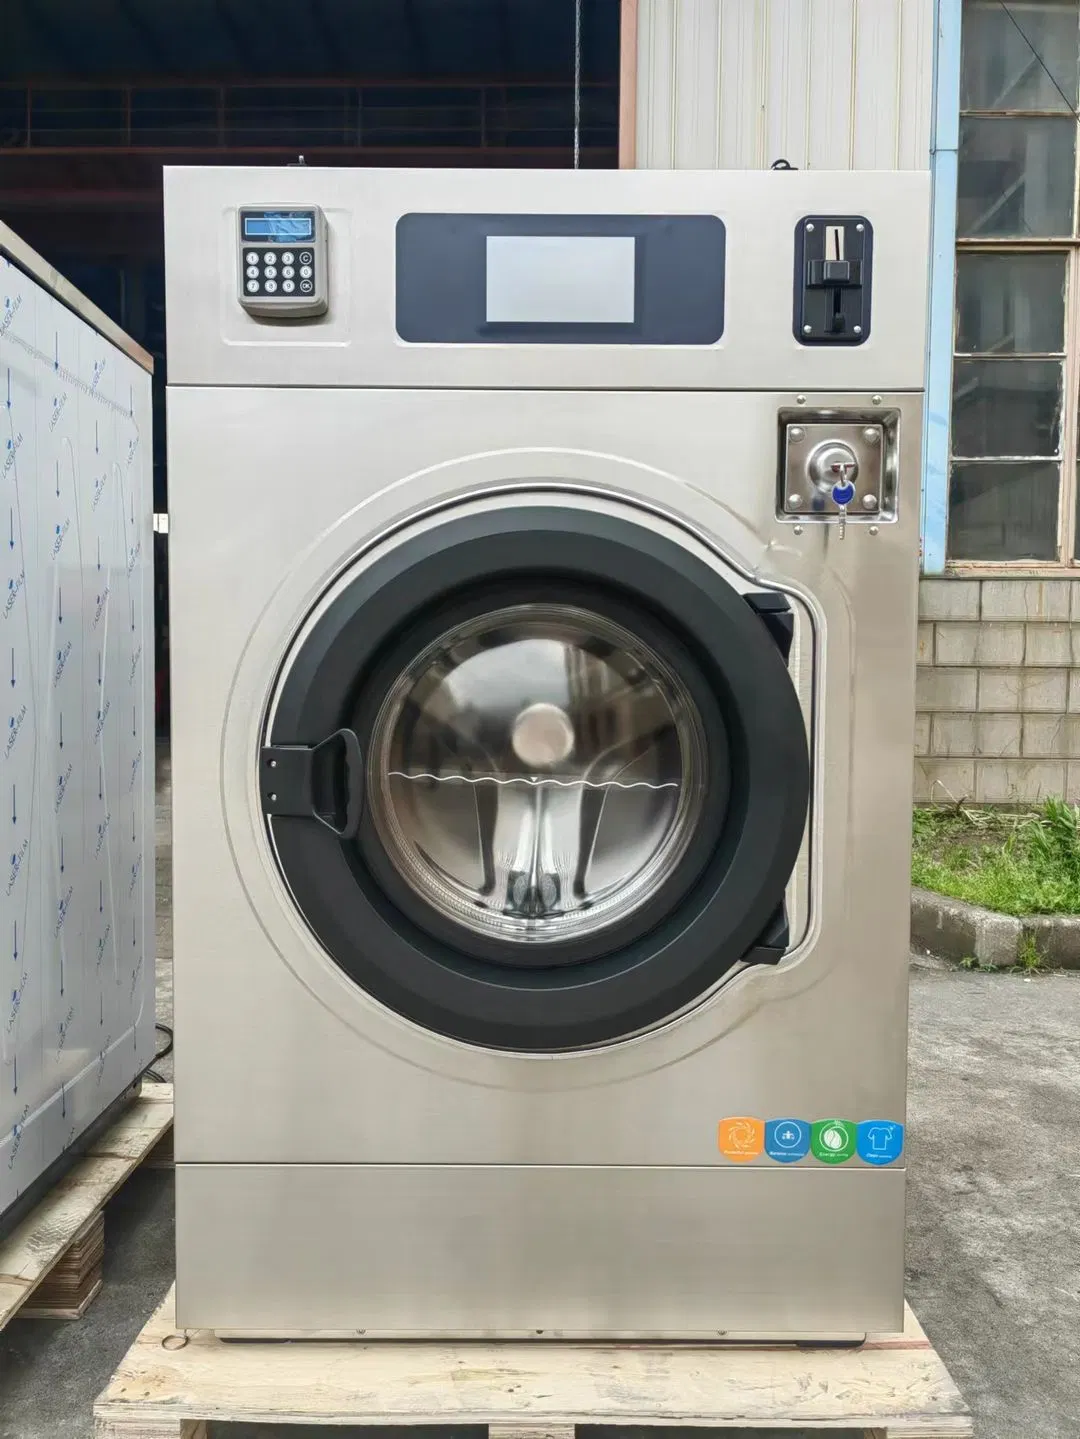 Промышленная стиральная машина прачечная Коммерческая самообслуживания стиральные машины прачечной Съемник машинной шайбы с монетным управлением